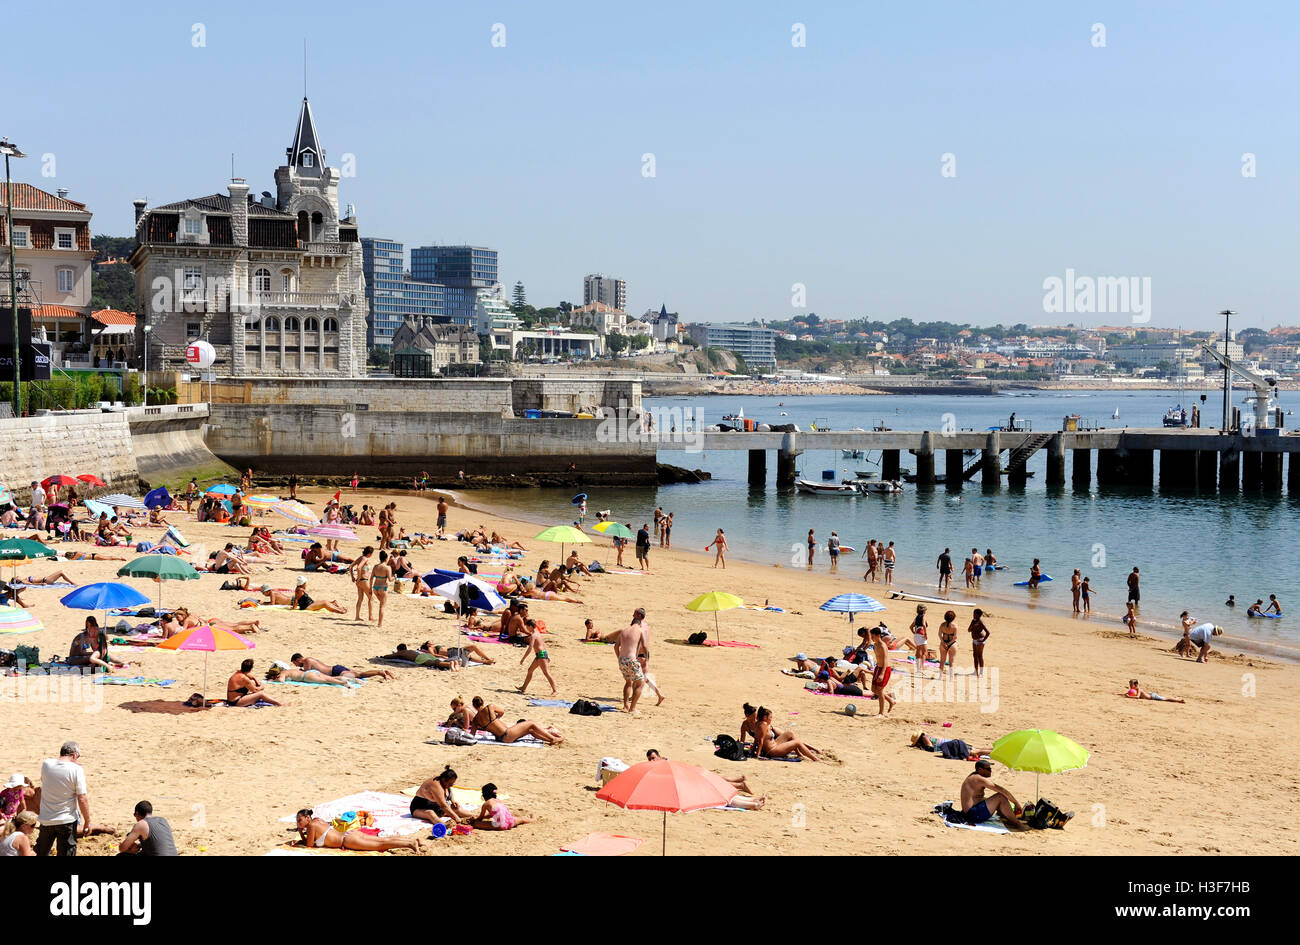 Plaia da Ribeira de Cascais, Cascais beach, Lisboa, Lisbon, Portugal Stock Photo